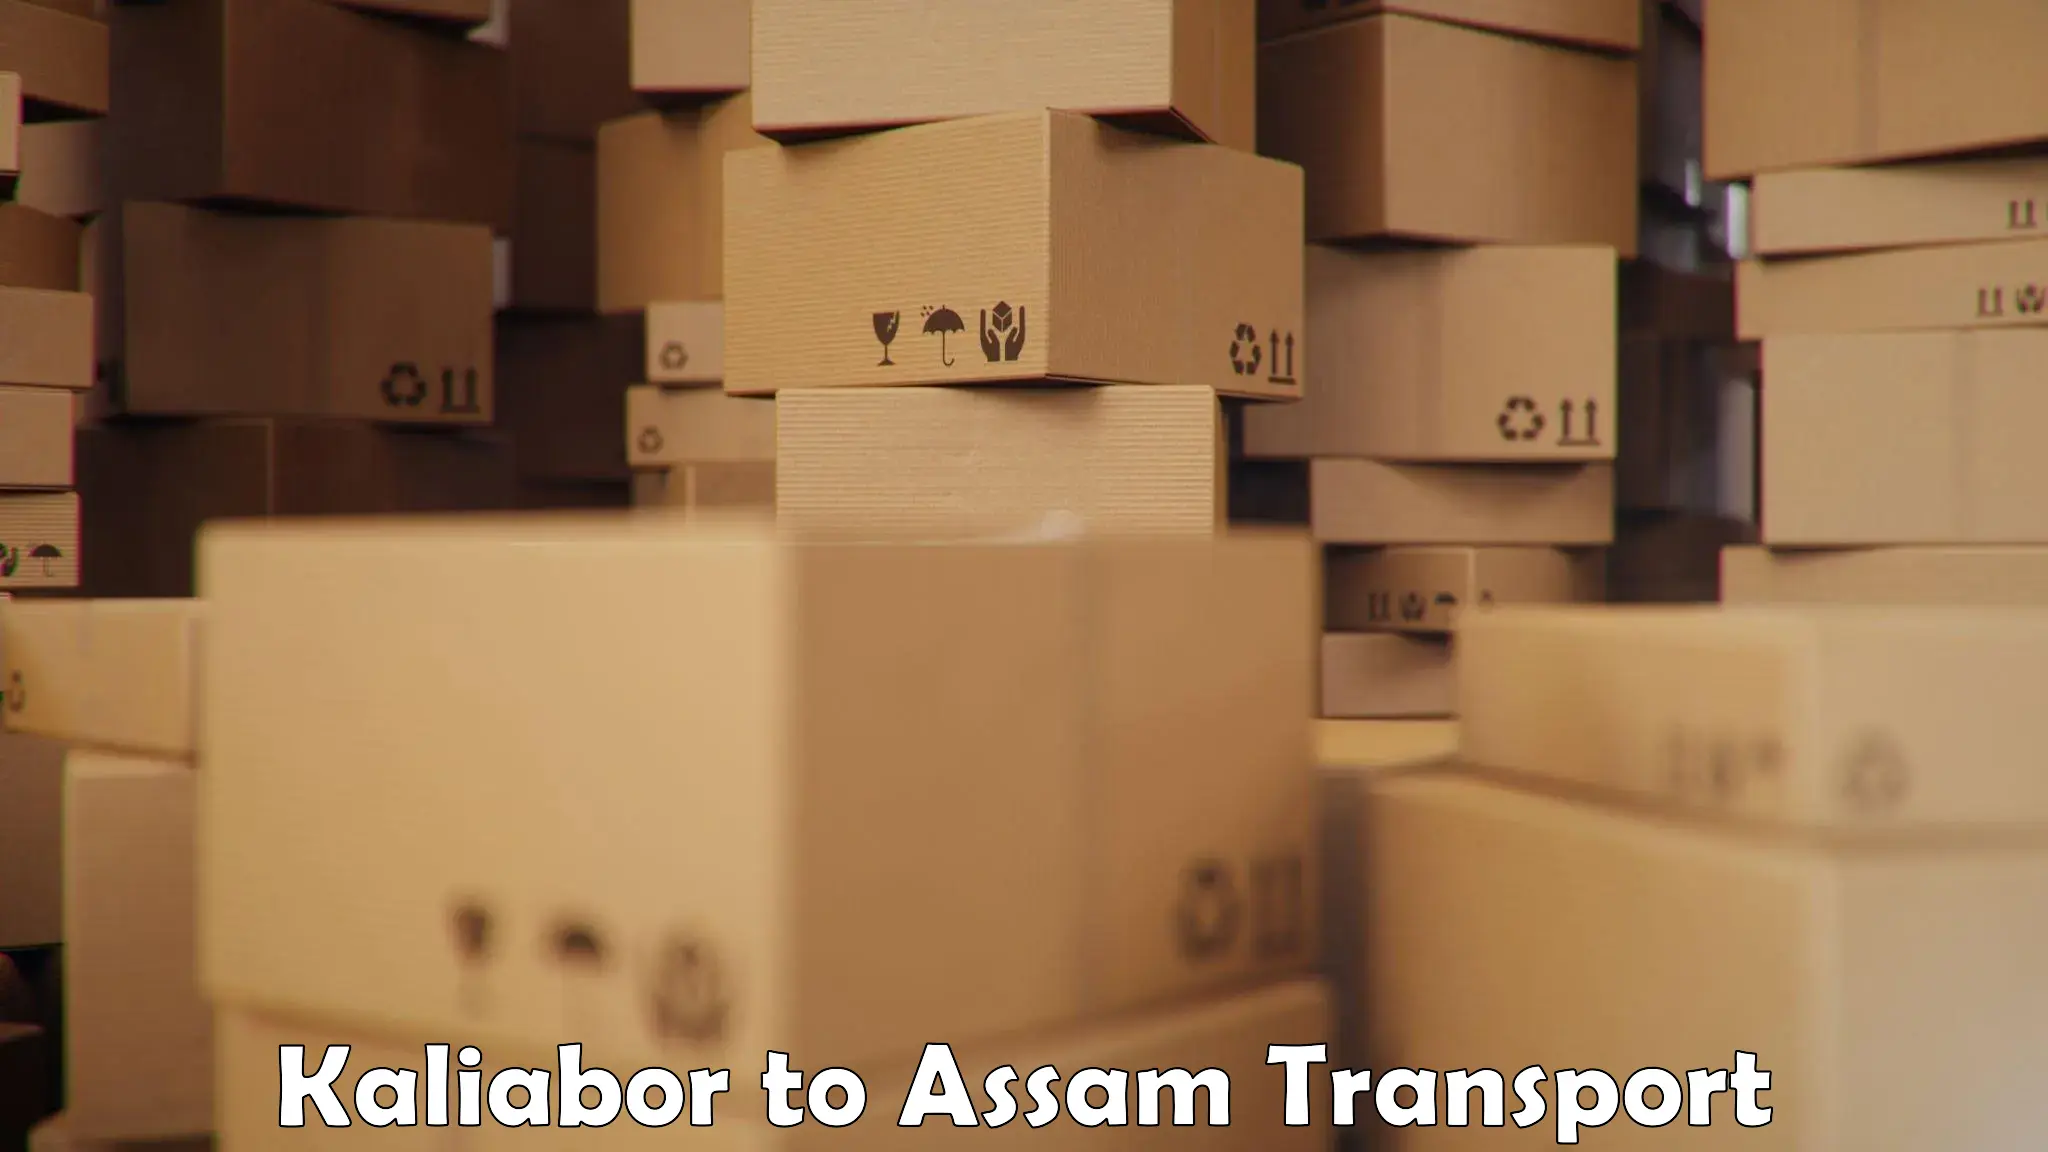 Nearest transport service Kaliabor to Assam University Silchar